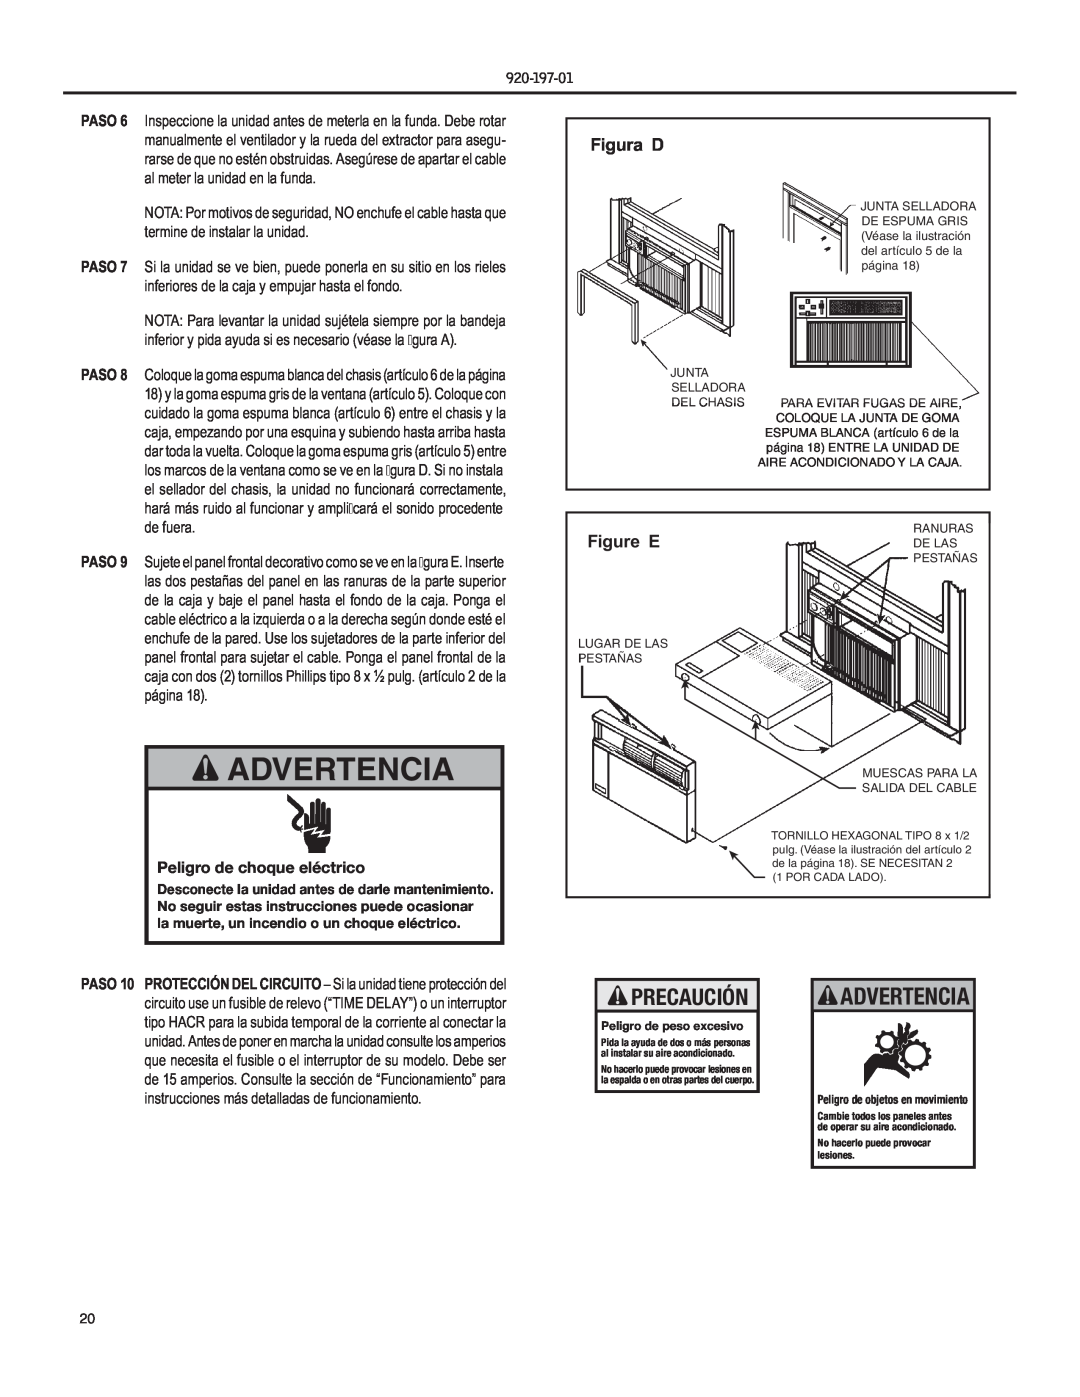 Friedrich YQ07, EQ08 operation manual Advertencia, Figura D, Figure EDE LAS, Precaución, Peligro de choque eléctrico 